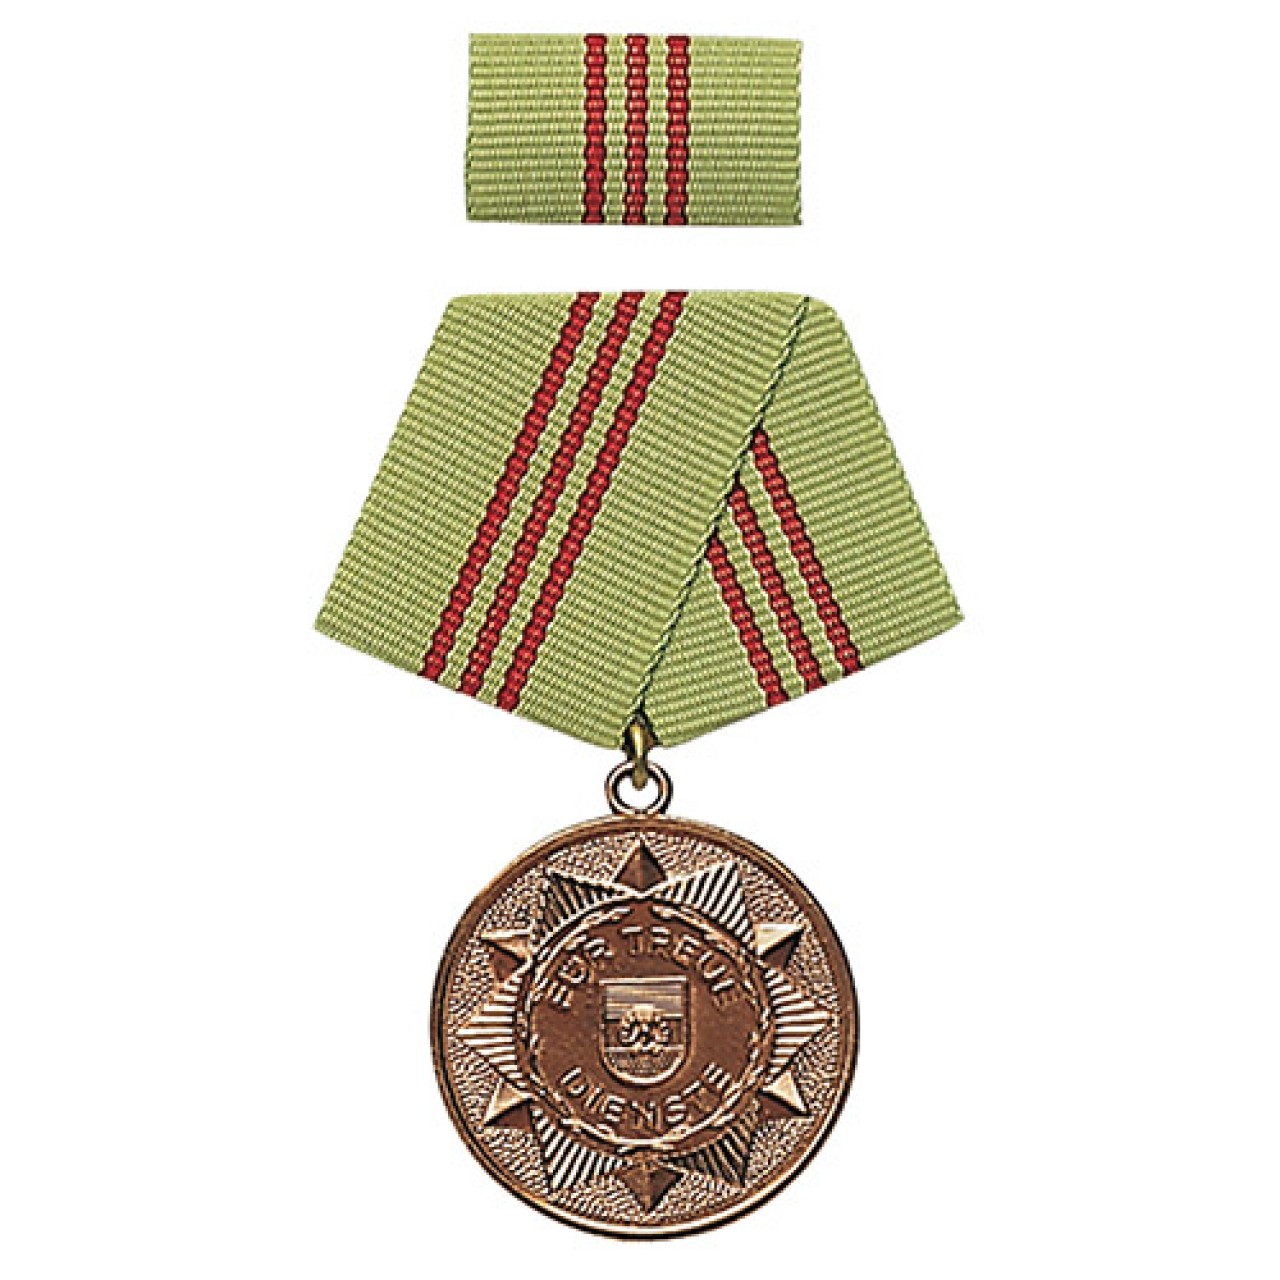 Medaila vyznamenania MDI 'F.TREUE DIENSTE' 5 rokov BRONZOVÁ